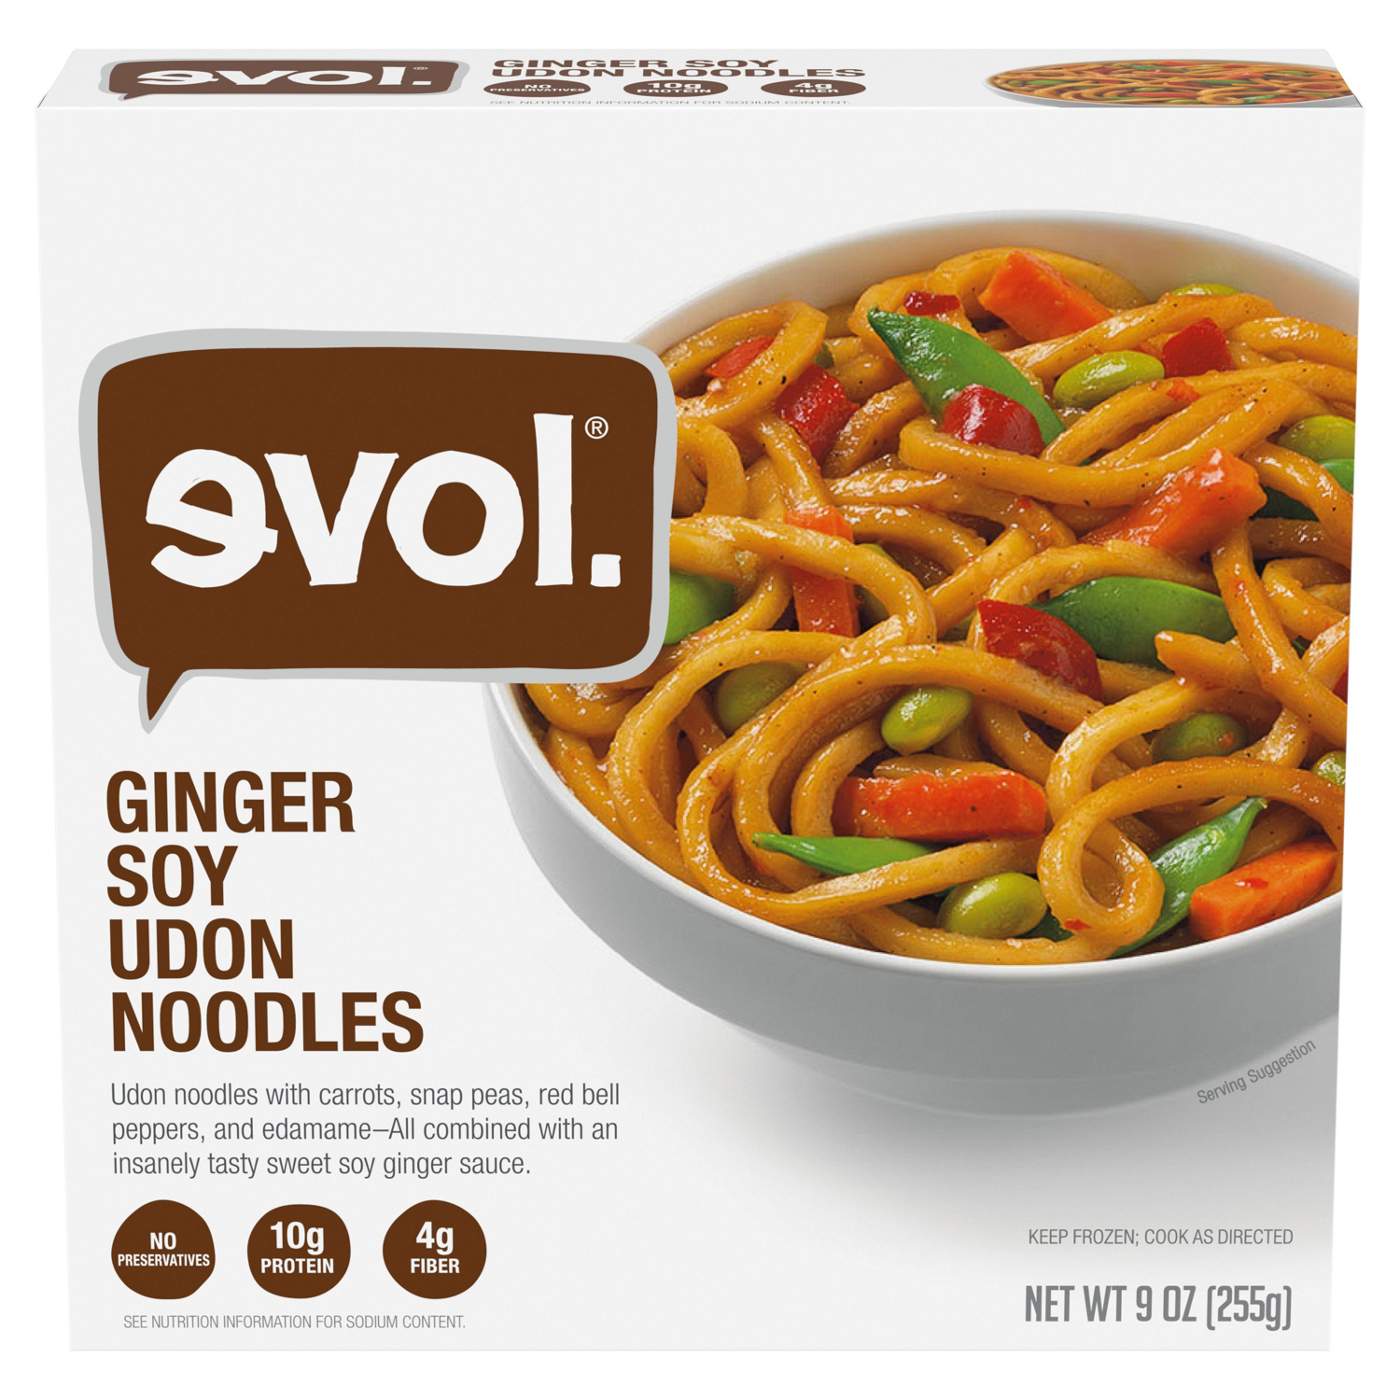 Evol Ginger Soy Udon Noodles Frozen Meal; image 1 of 5